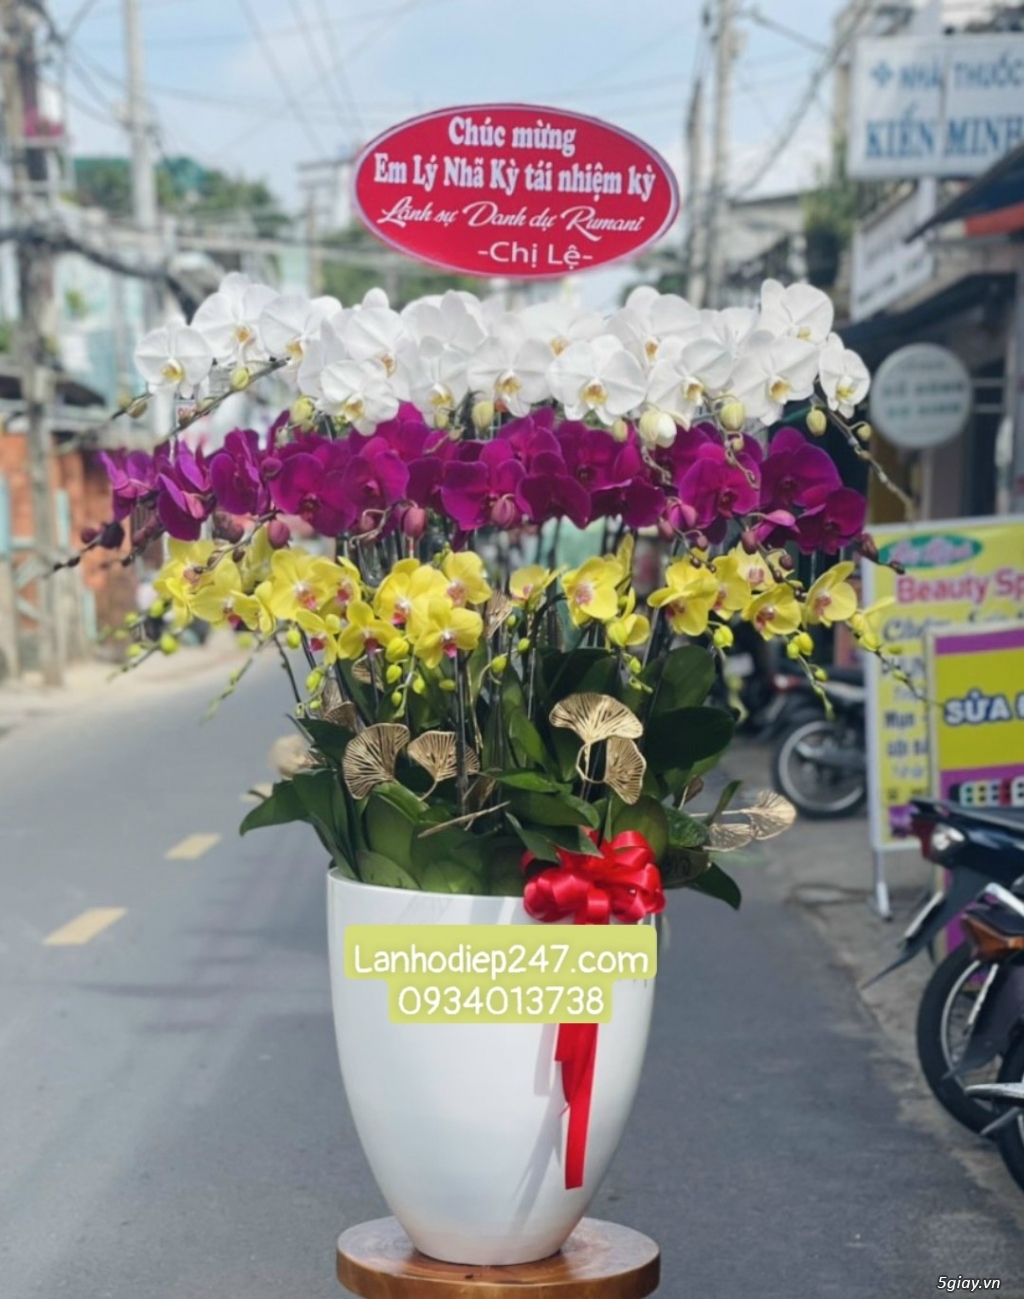 Những mẫu Lan Hồ Điệp đẹp bán chạy nhất tại Hoa lan Sài Gòn 247 - 12